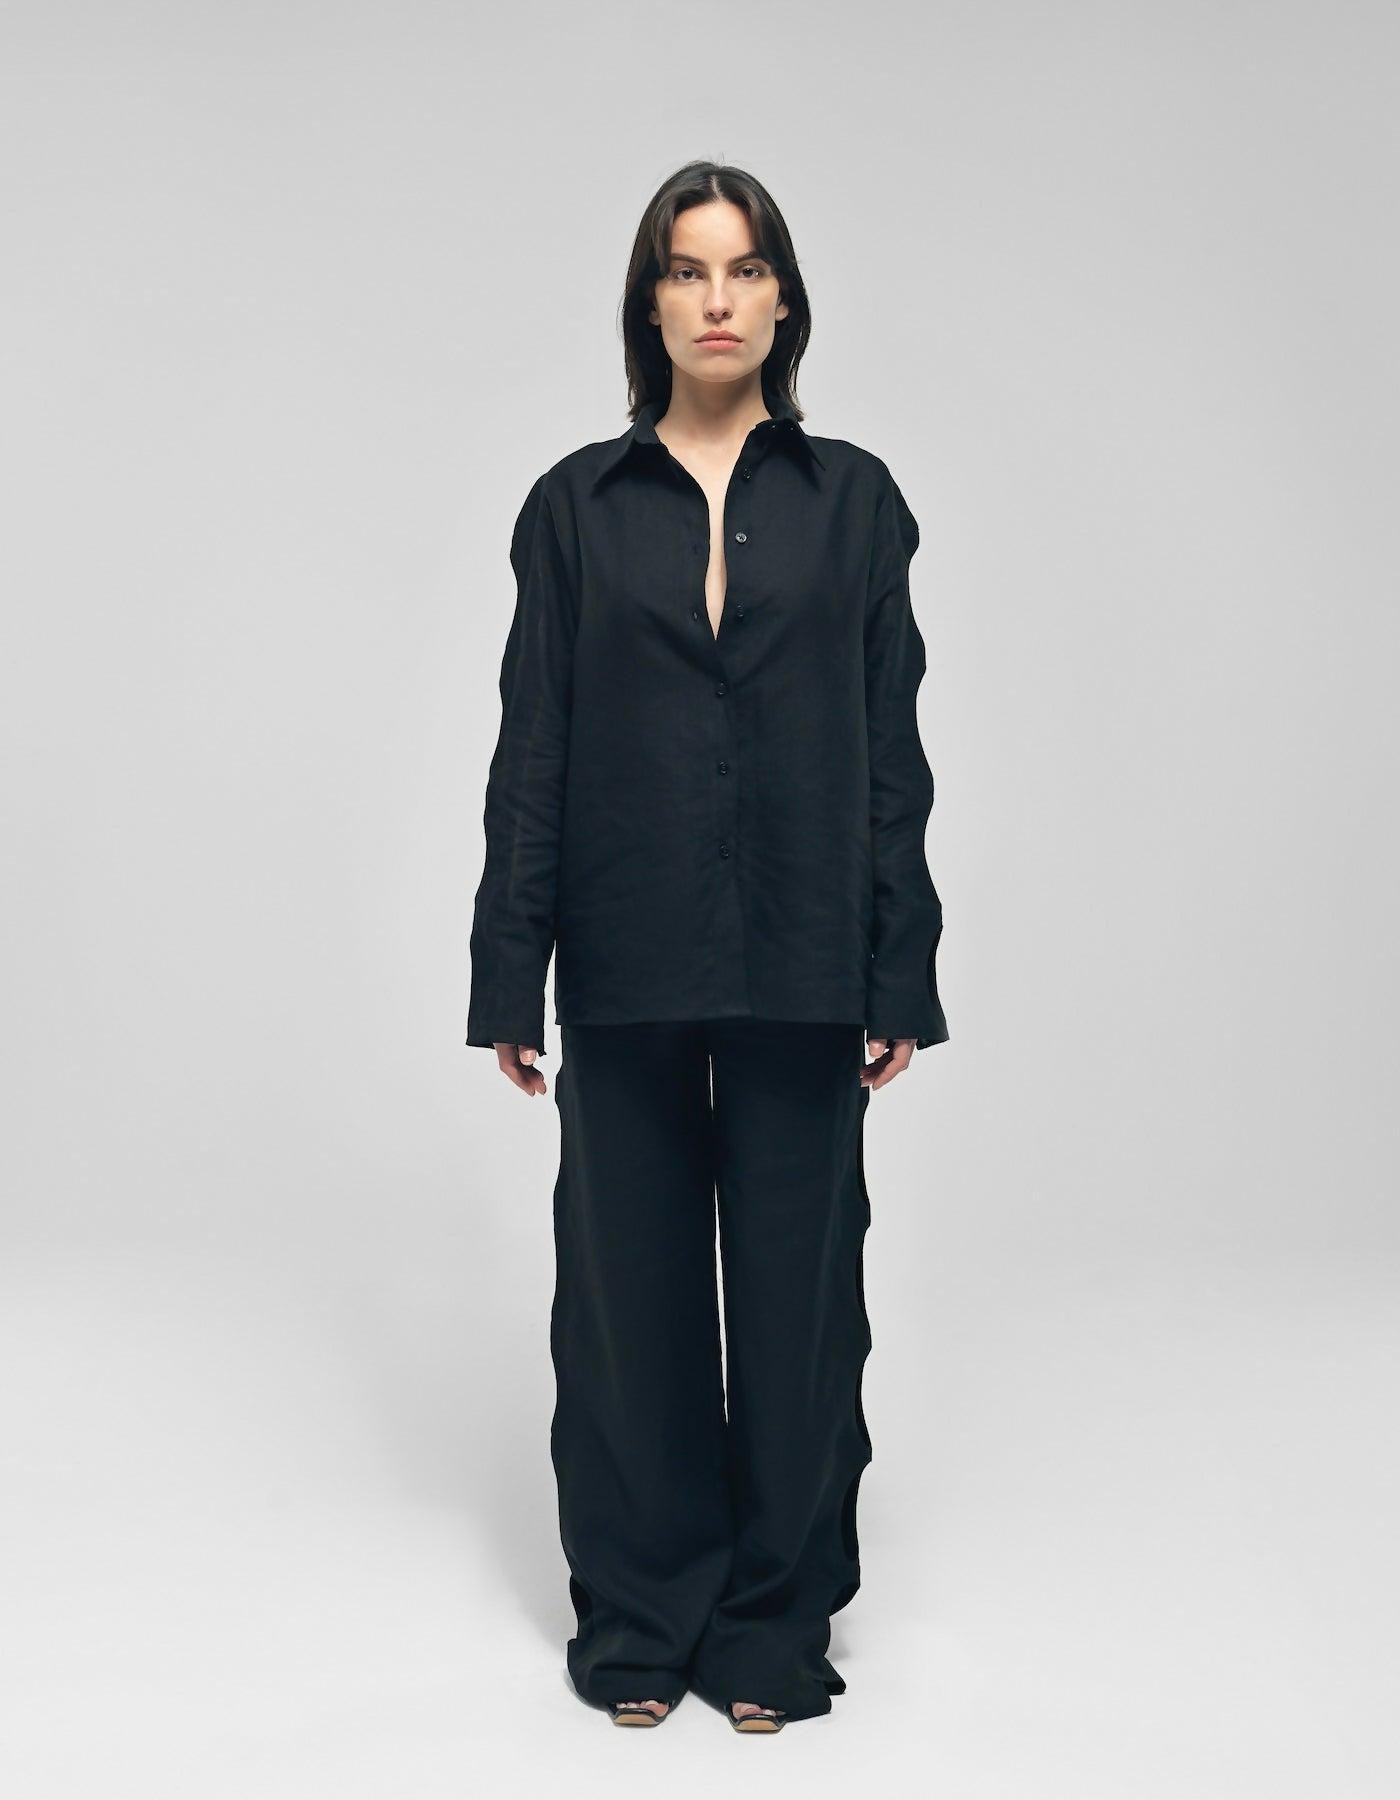 Nereus Black Cut-Out Linen Suit by MAET STUDIO